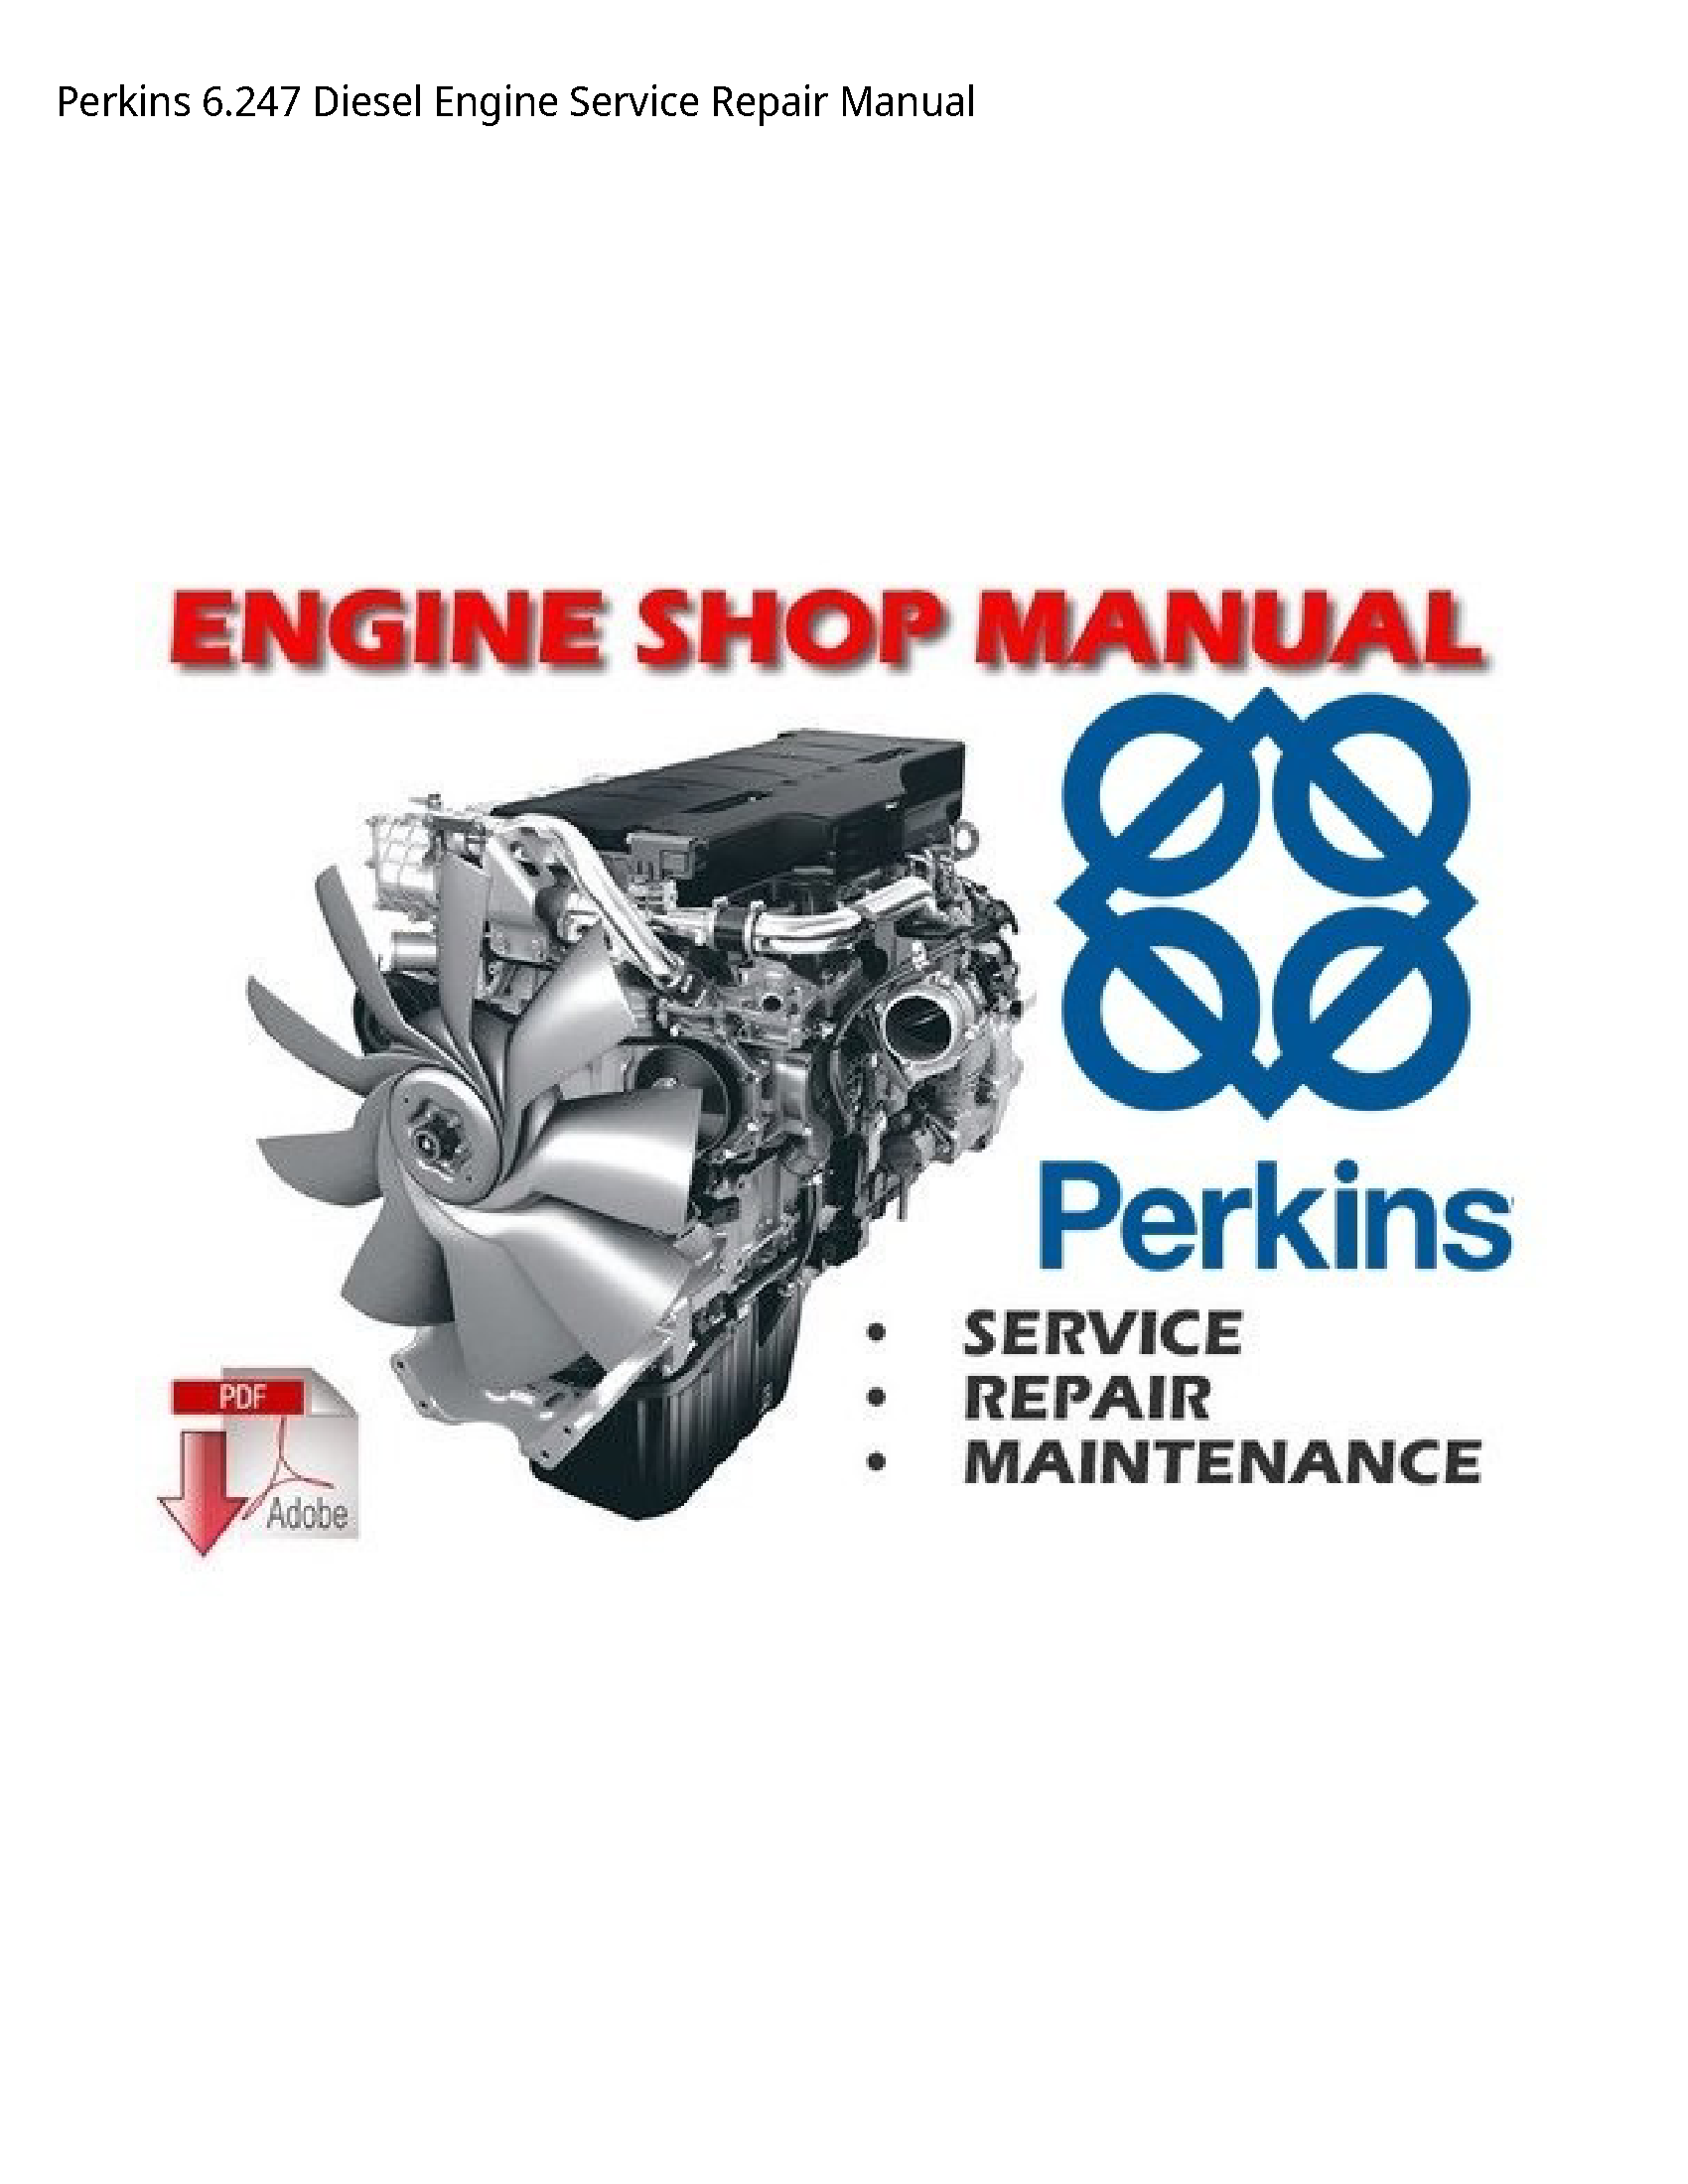 Perkins 6.247 Diesel Engine manual